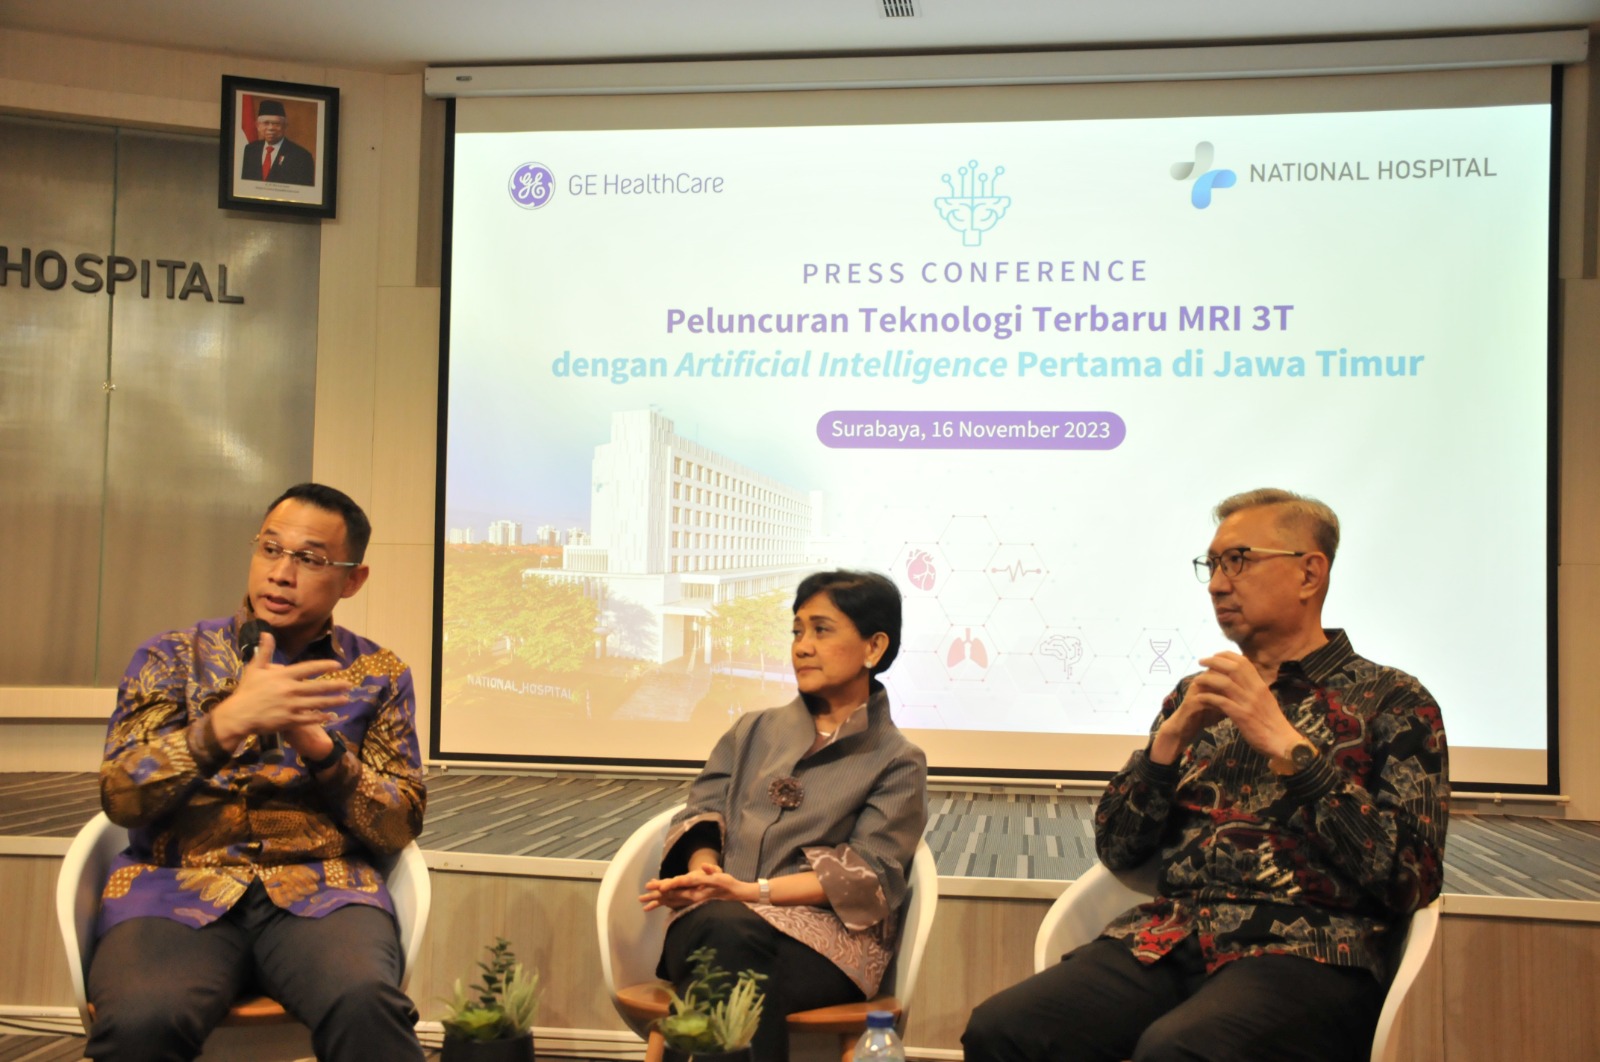 Kolaborasi National Hospital Surabaya dan GE Healthcare Indonesia Hadirkan MRI 3T dengan AI, Pertama di Jatim